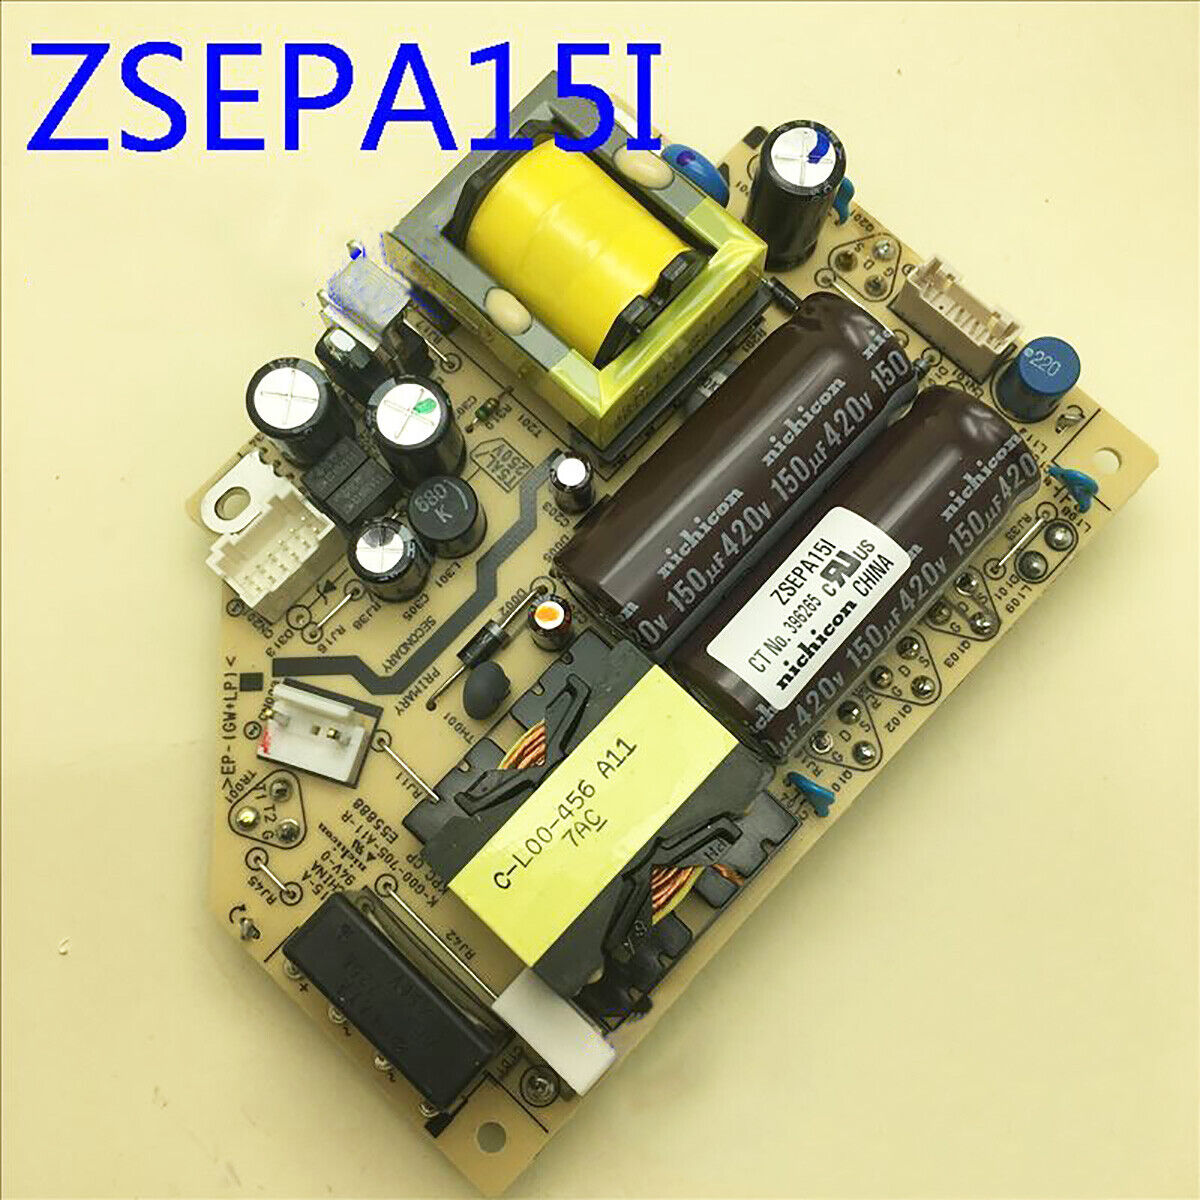 Original ZSEPA15I Projector Power Supply Board For Epson CB-4550/4650/4750W